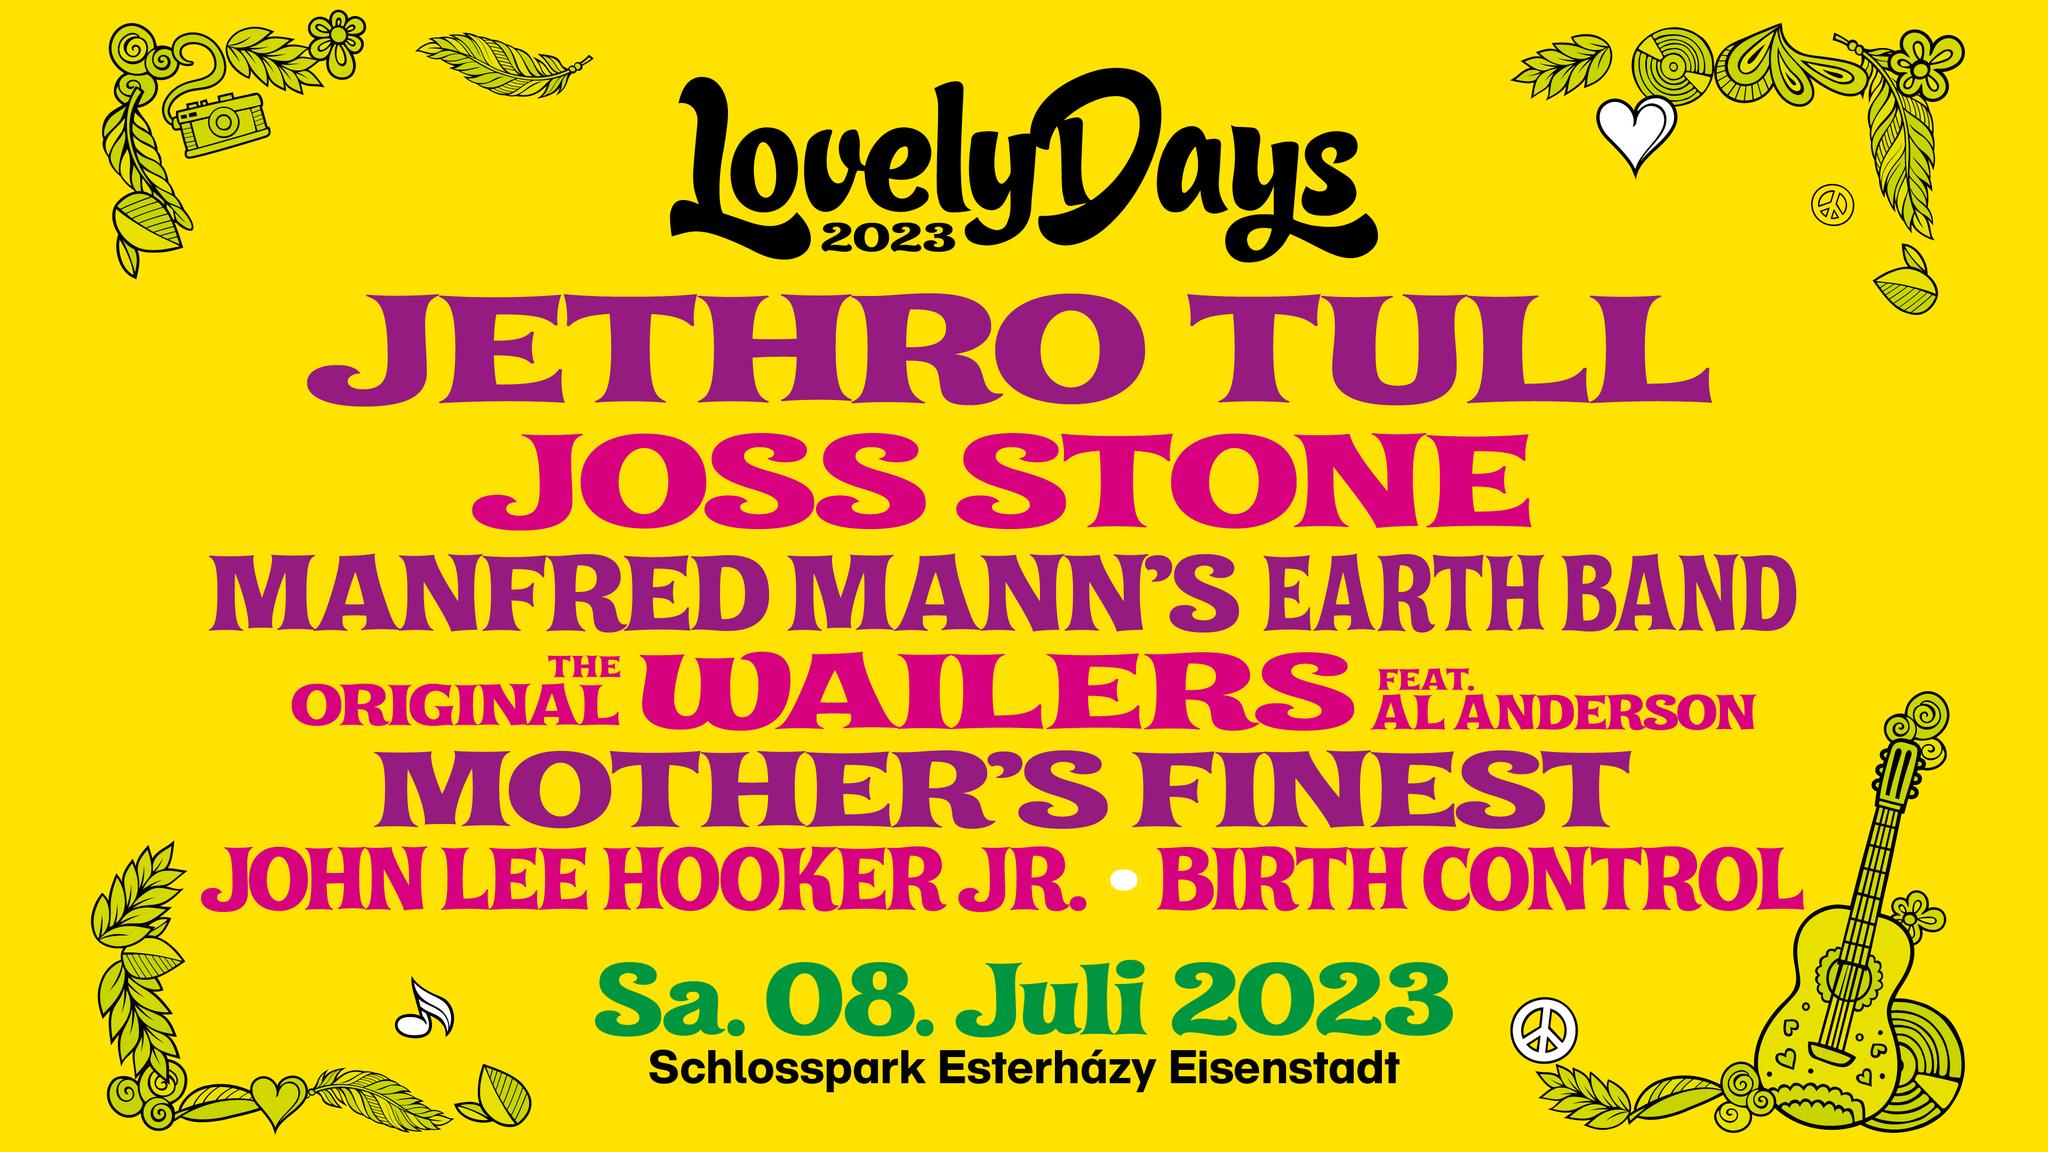 Lovely Days Festival 2023 2bconfirmed